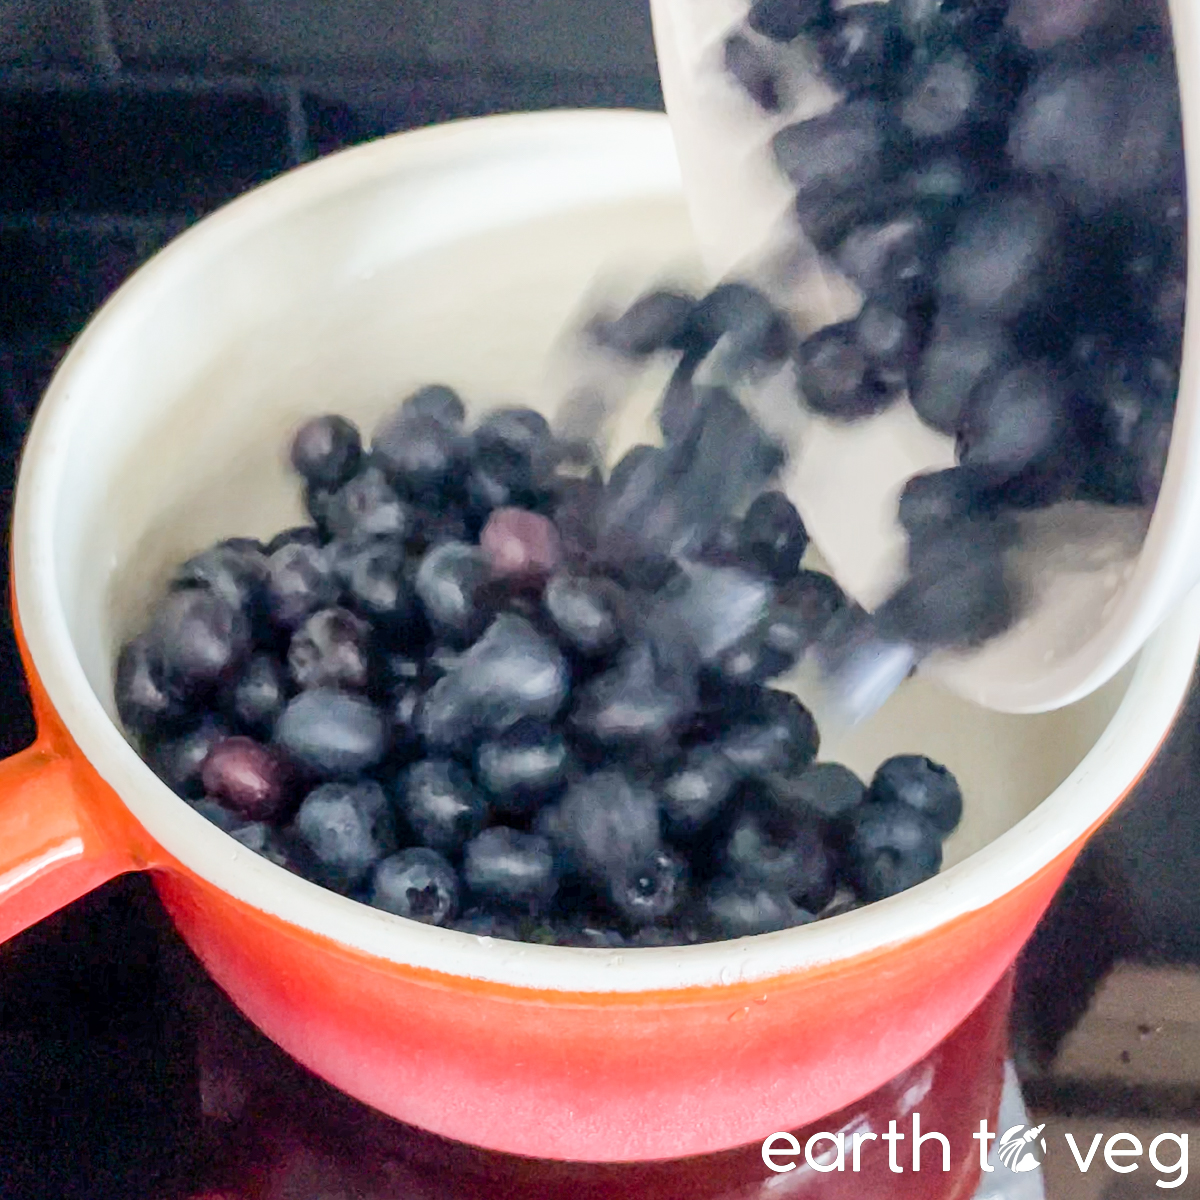 Fresh blueberries are poured into an orange enamel pot.